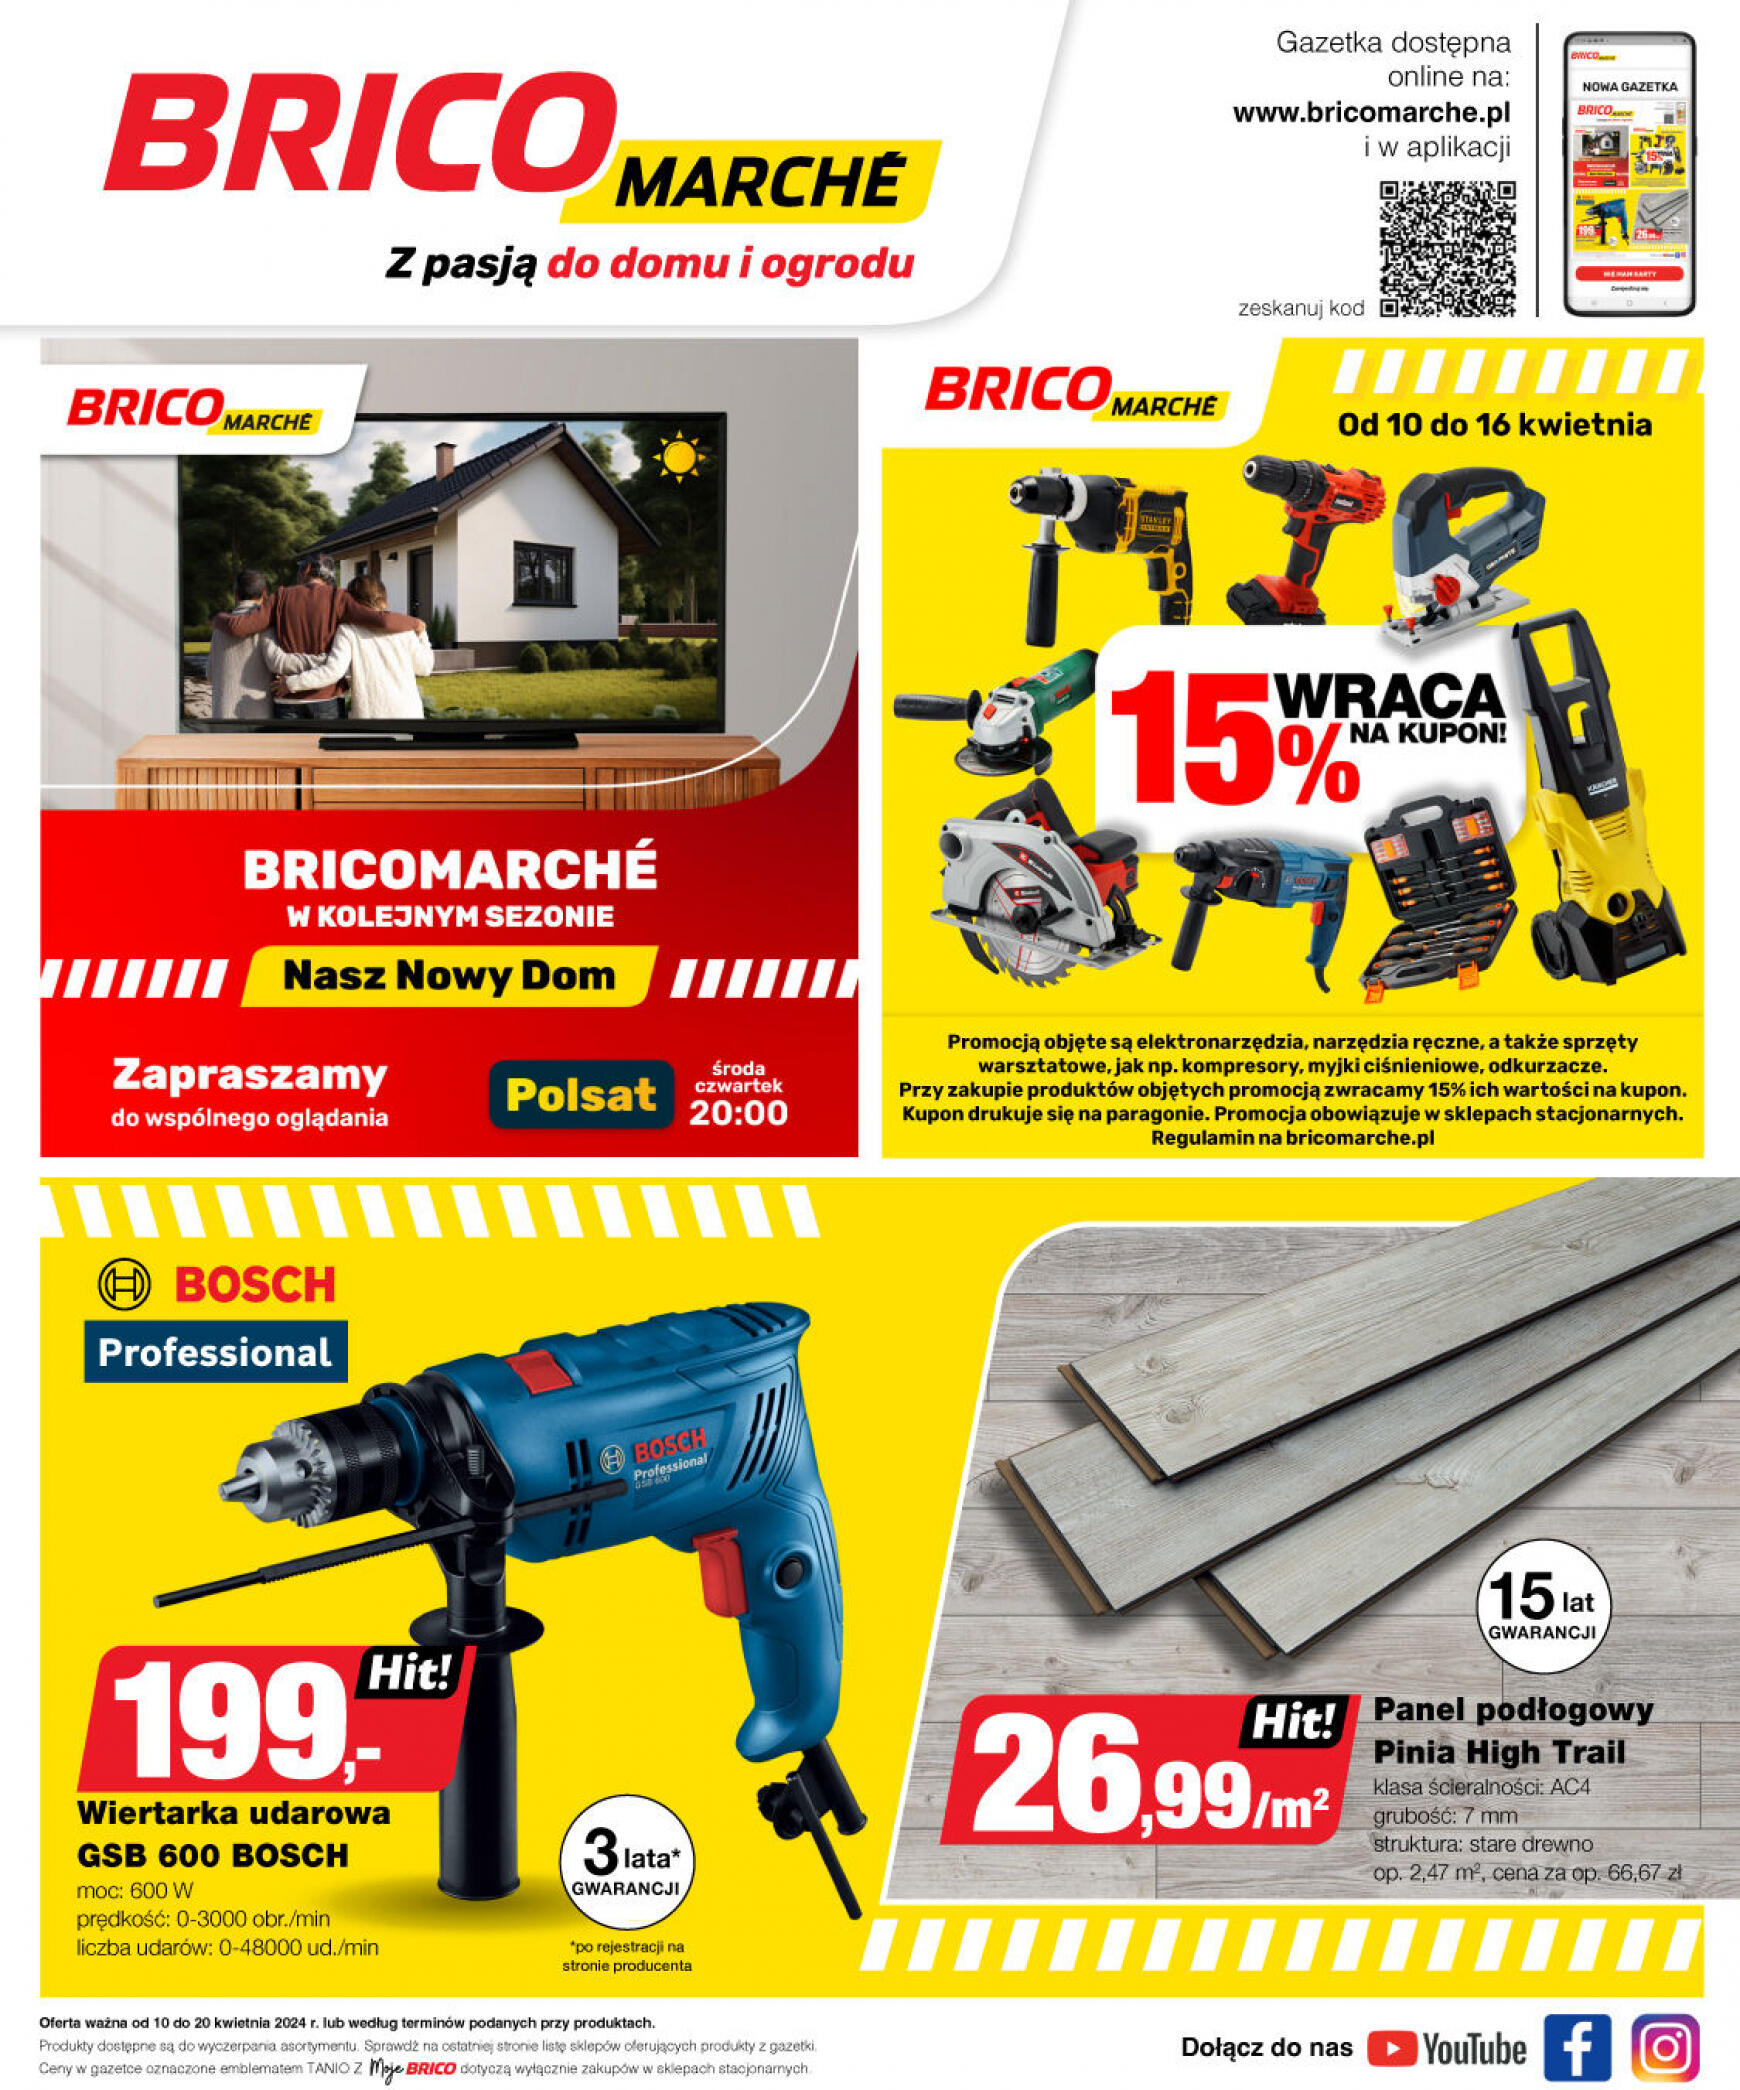 brico-marche - Bricomarché gazetka aktualna ważna od 10.04. - 20.04. - page: 19